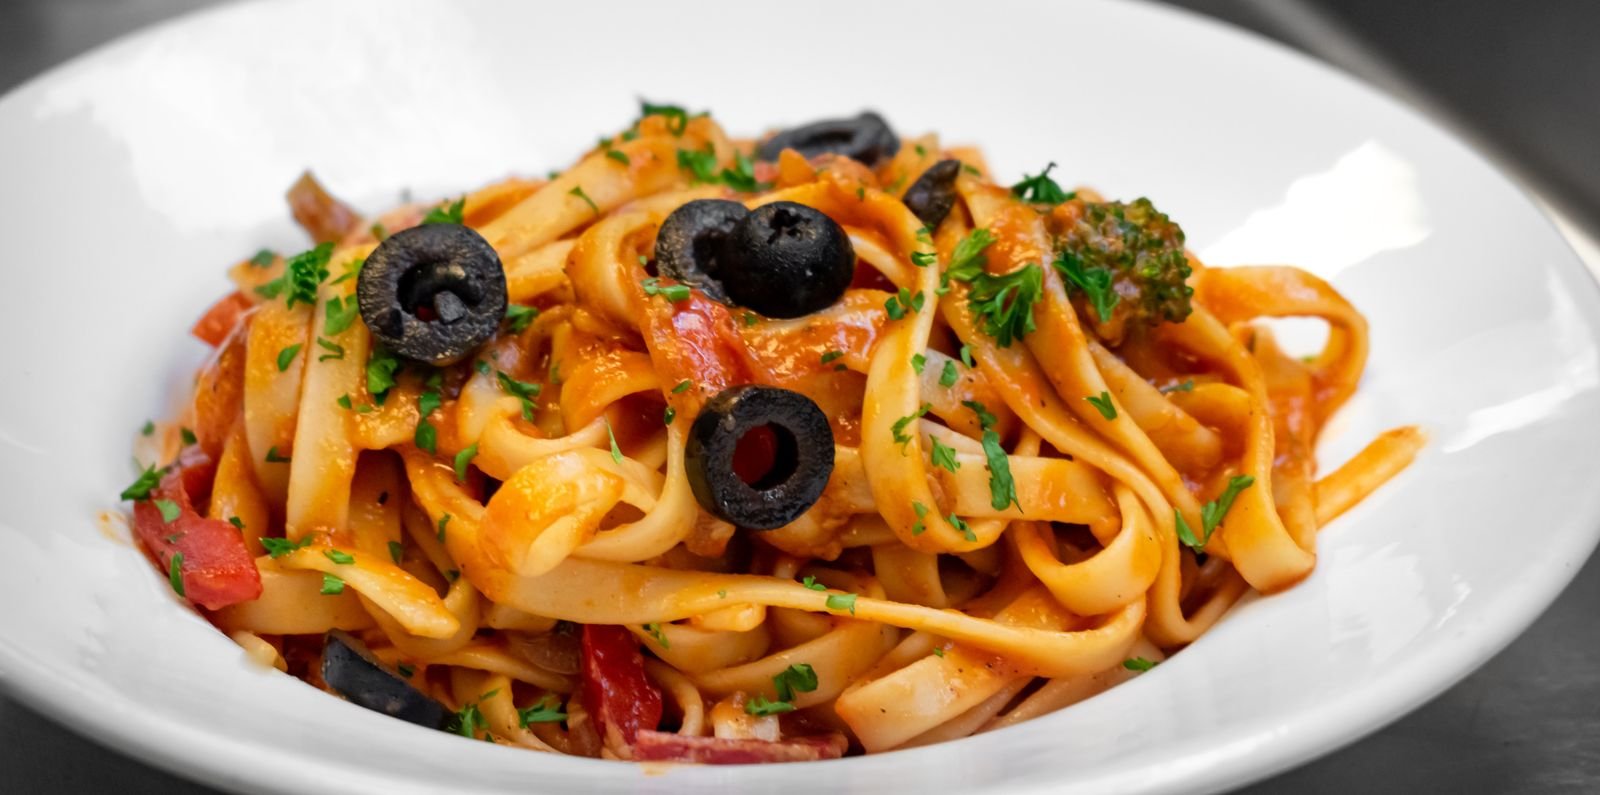 bowl of pasta at italian restaurant in arlington heights Francesca’s Tavola (1)